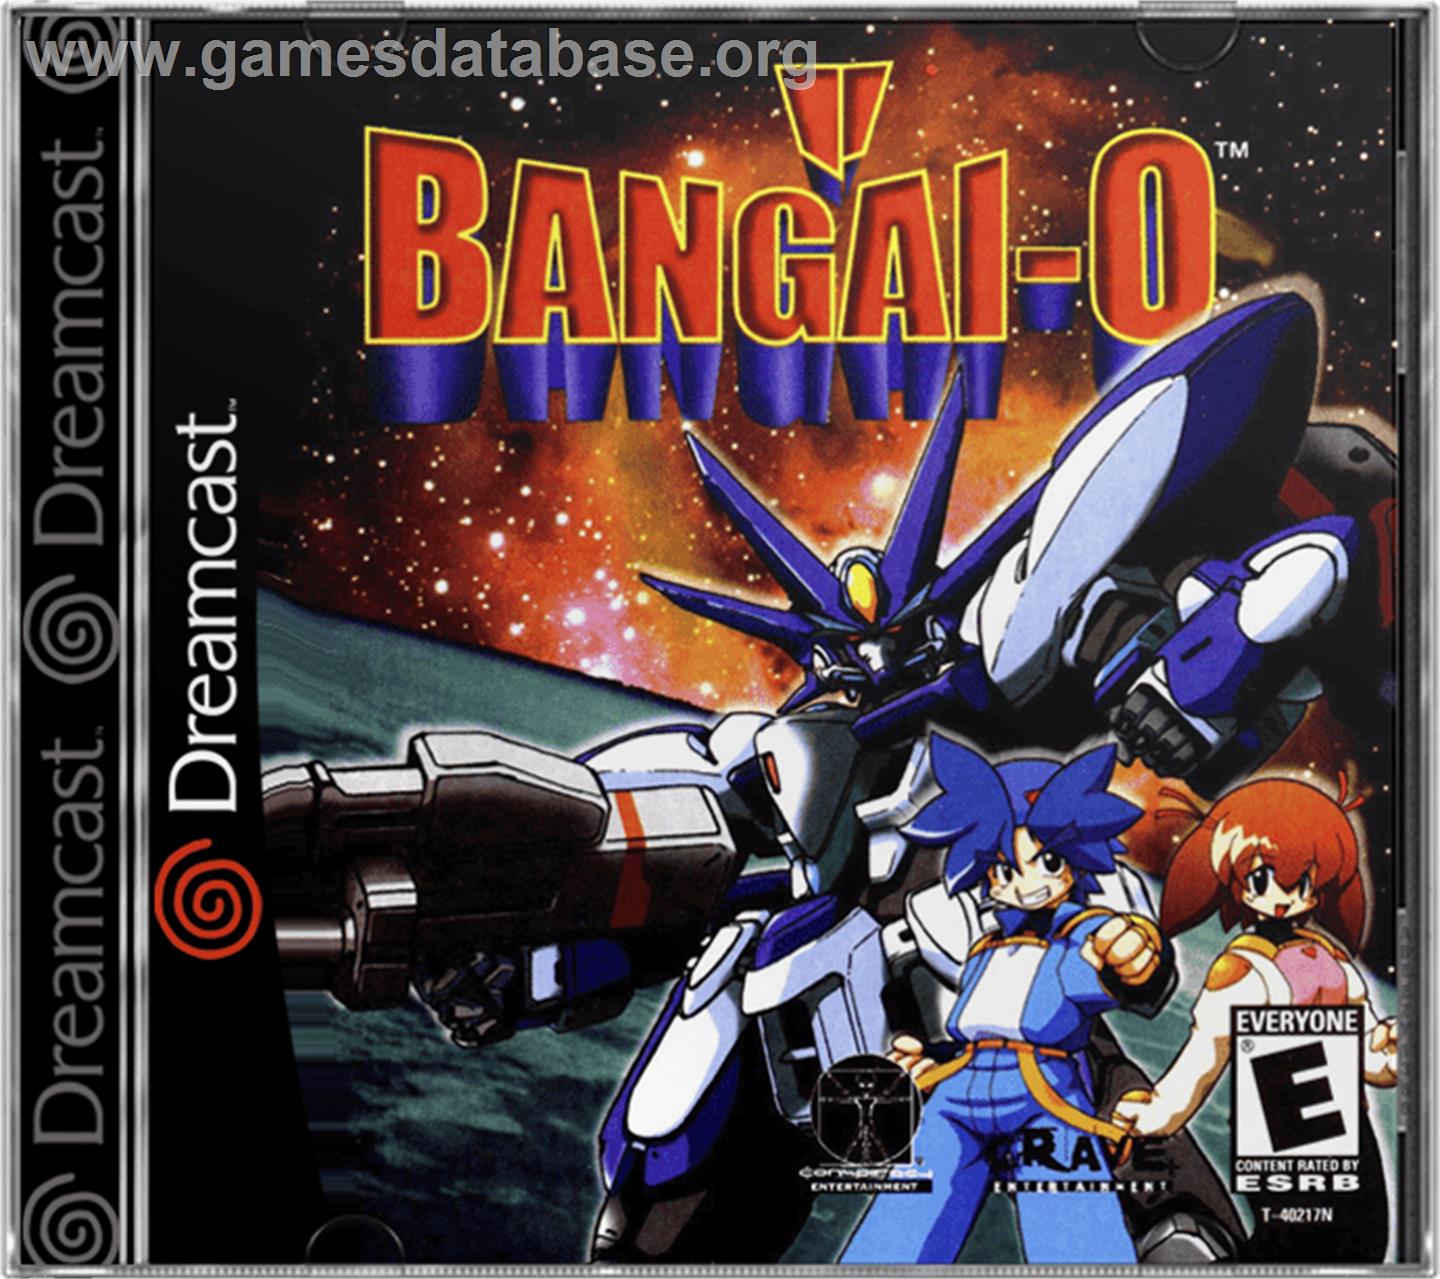 Bangai-O - Sega Dreamcast - Artwork - Box